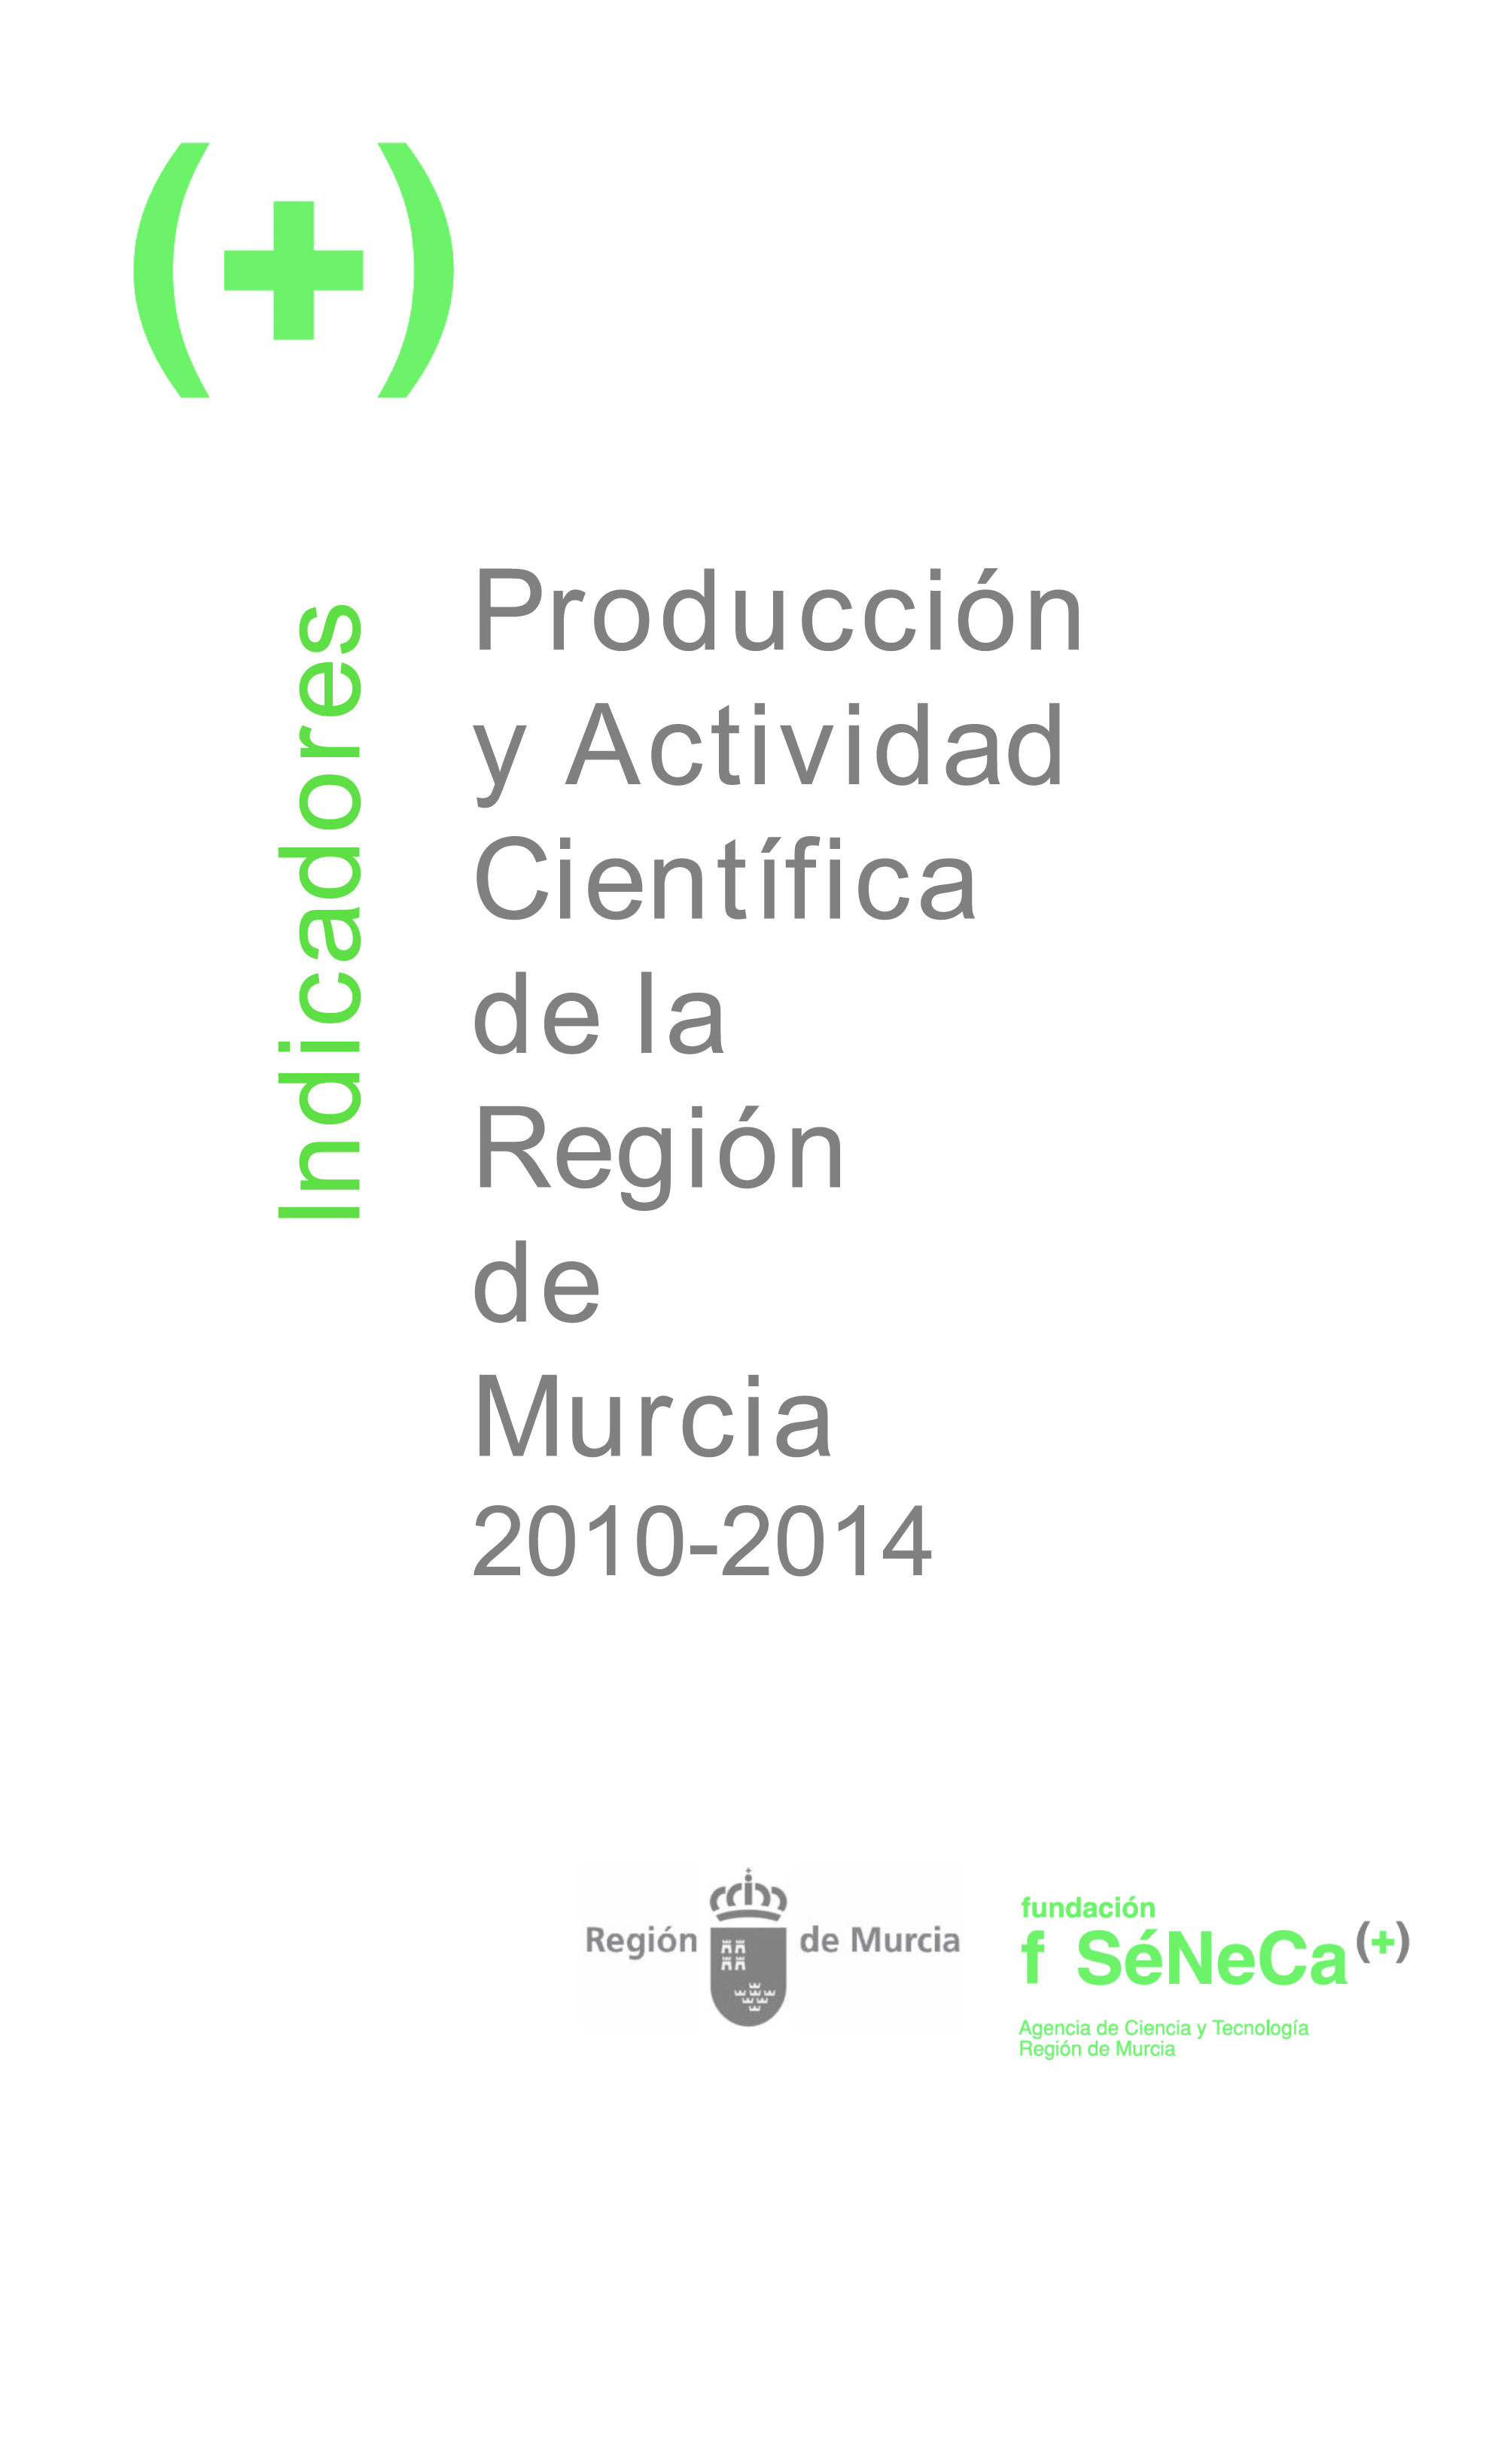 Indicadores de Producción y Actividad Científica de la Región de Murcia 2010-2014